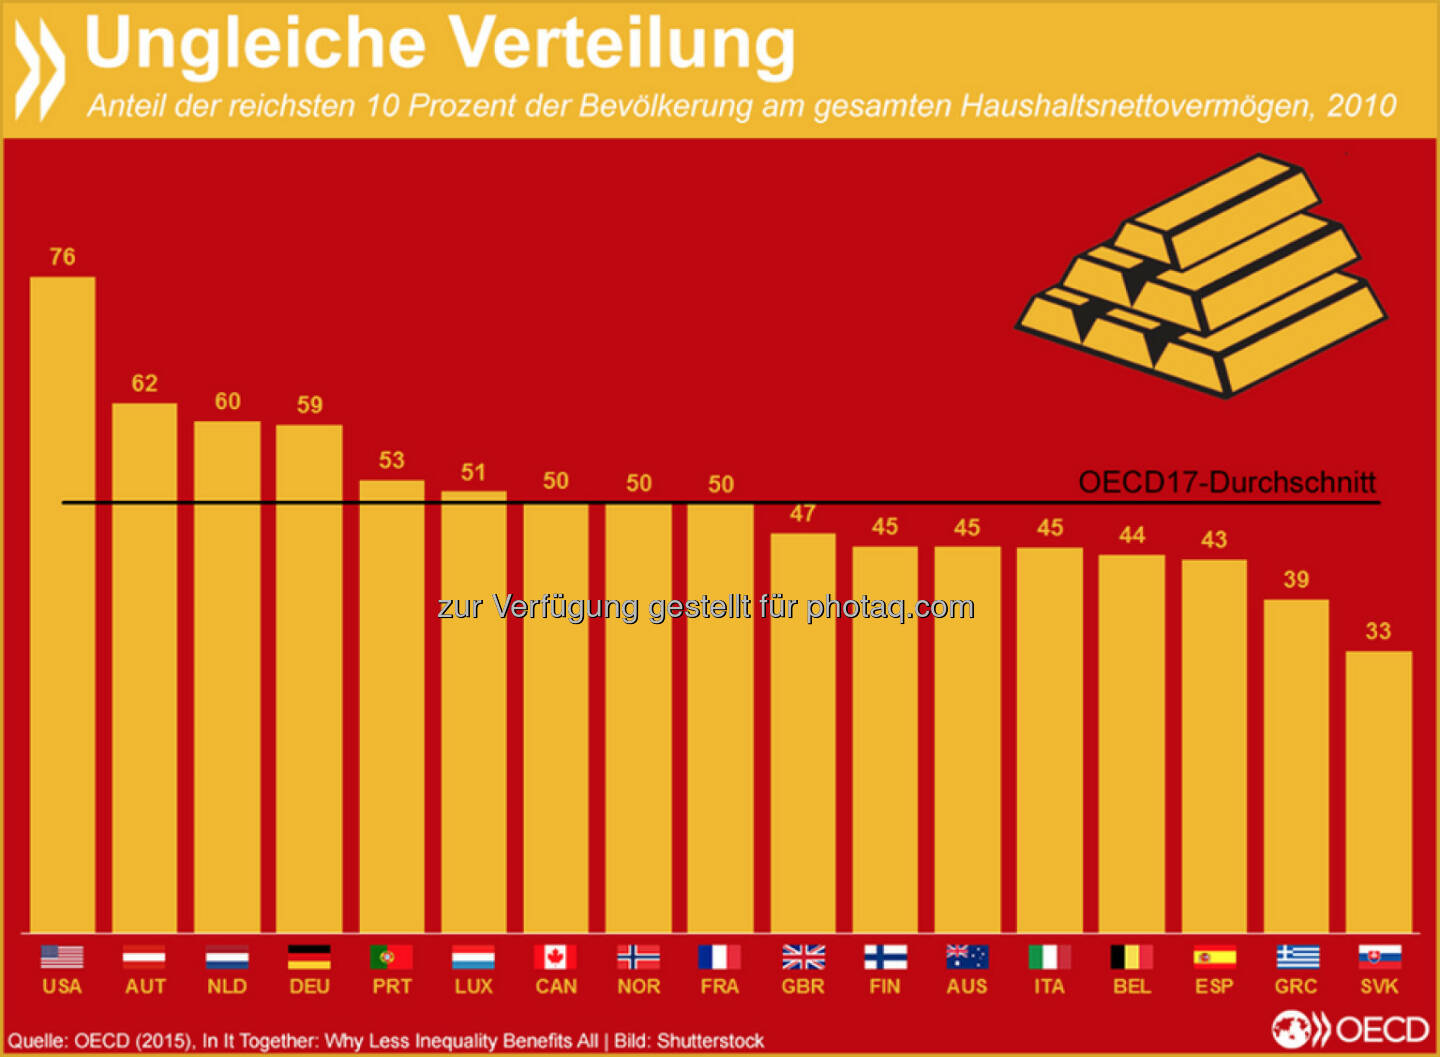 Kleines Stück vom Kuchen: Vermögen sind in vielen OECD-Ländern noch ungleicher verteilt als Einkommen. Im Durchschnitt besitzen die zehn Prozent der Reichsten die Hälfte der gesamten Haushaltsnettovermögen. In Deutschland und Österreich haben sie sogar 60 Prozent.
Mehr Informationen zur Verteilungsgerechtigkeit in der OECD findet Ihr unter: http://bit.ly/1LjBGyW